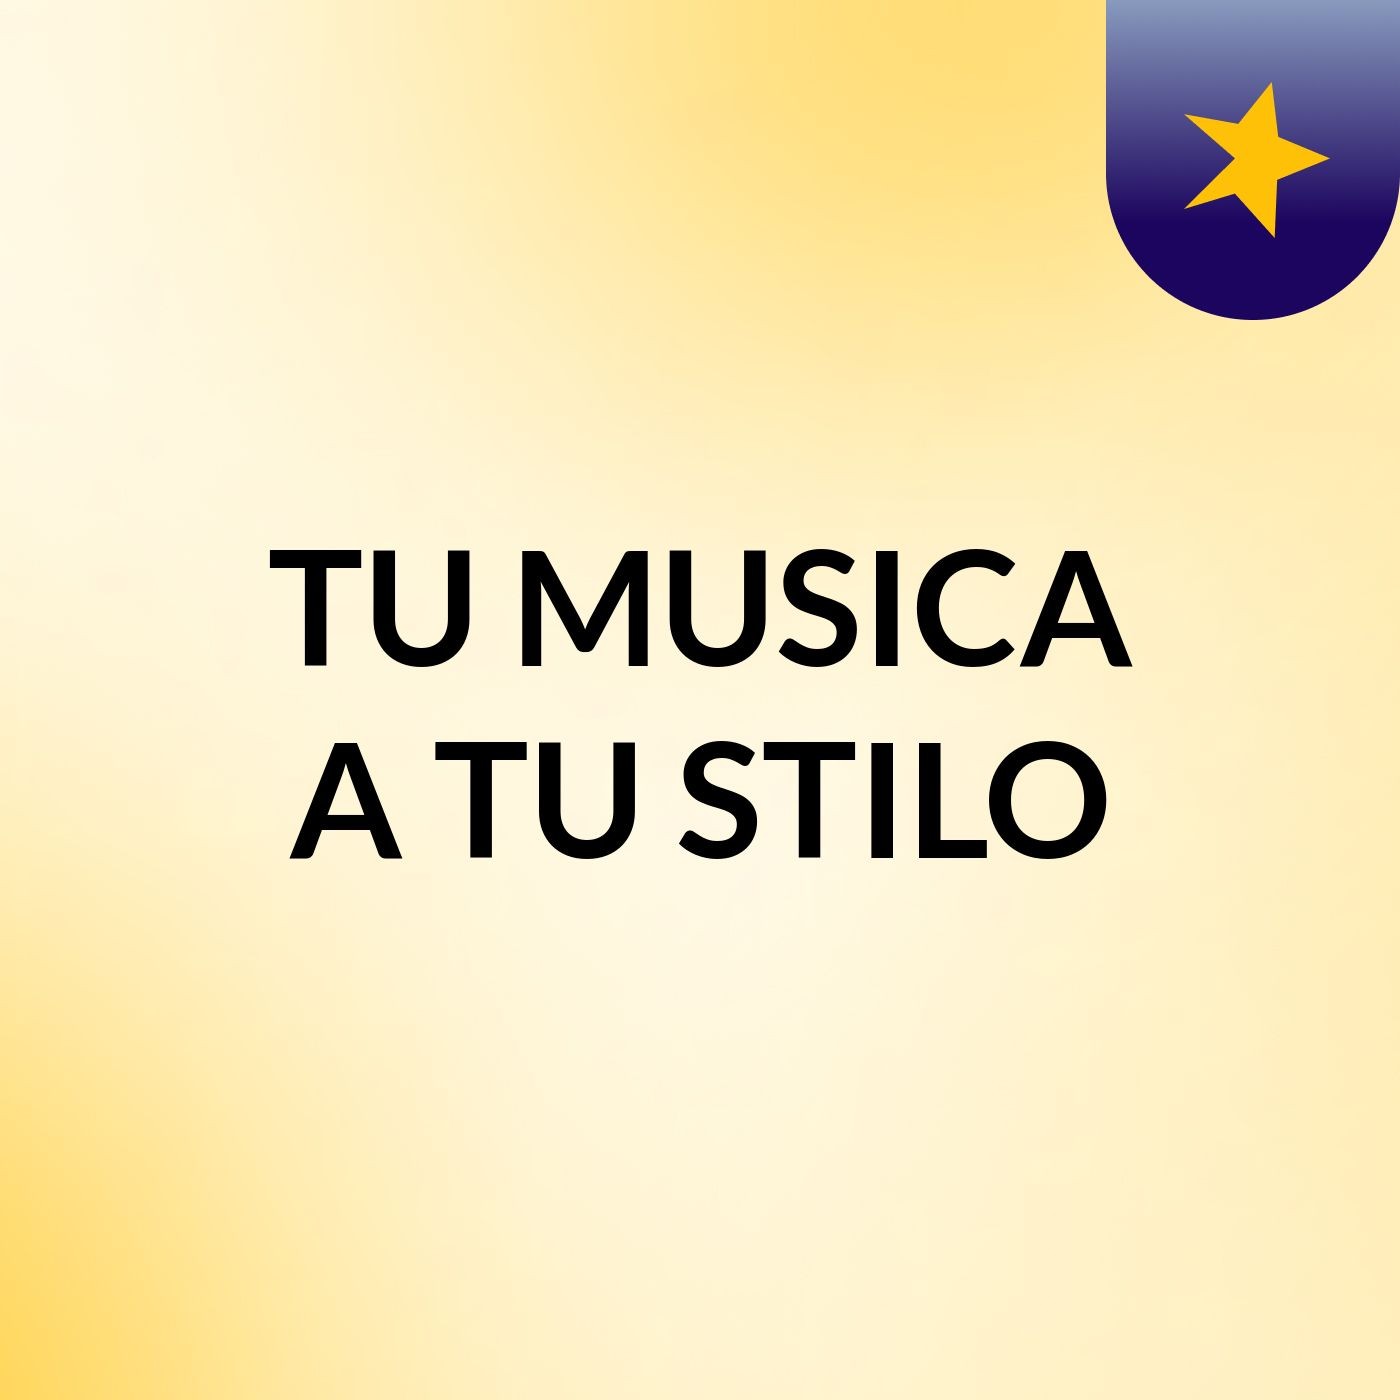 TU MUSICA A TU STILO